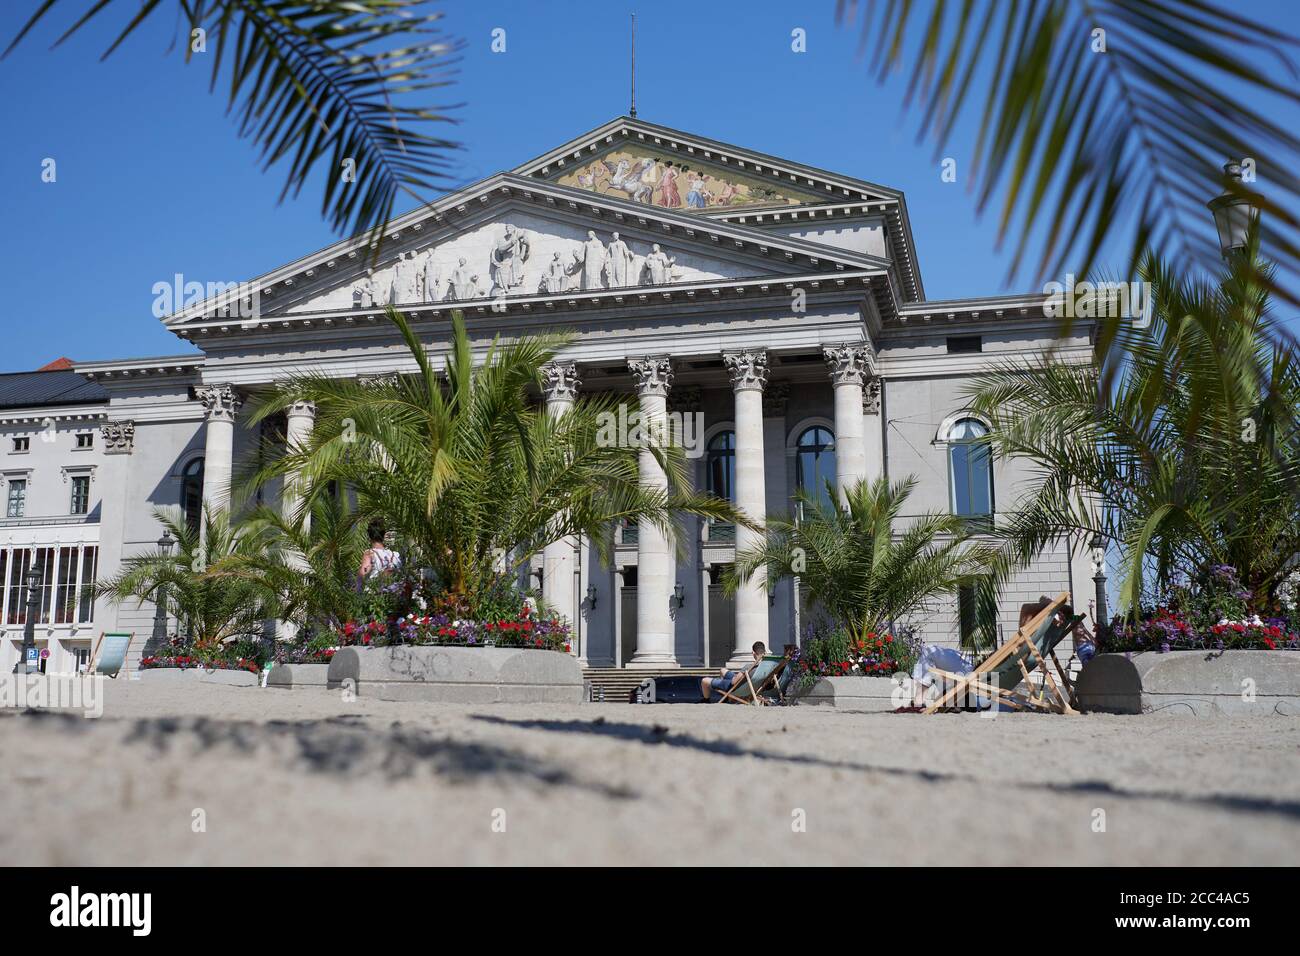 München, Deutschland - 9. August 2020: Ein temporärer Palmenstrand wurde vor das Nationaltheater in München gebracht, um "Sommer in der Stadt" zu feiern Stockfoto